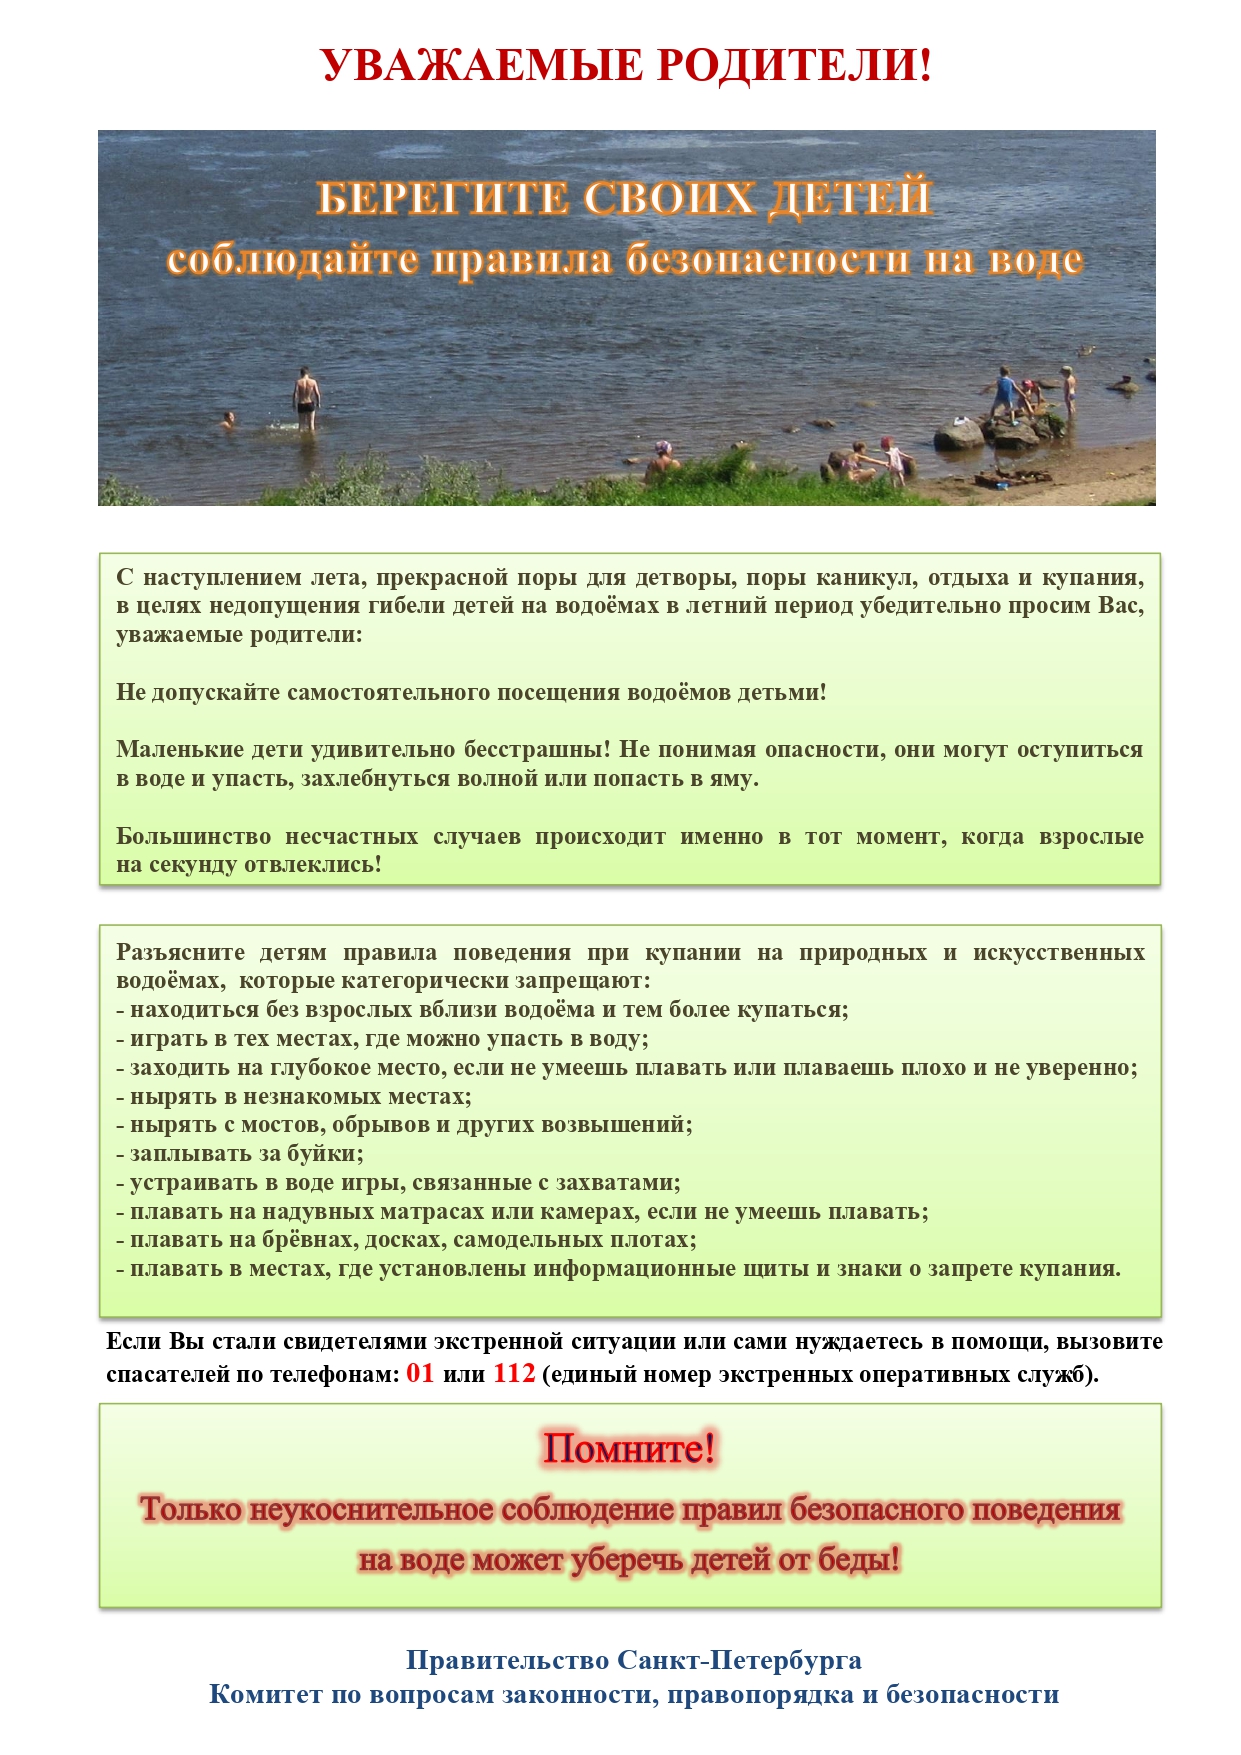 Памятка родителям по запрету купания в неотведённых местах 2021 page 0001